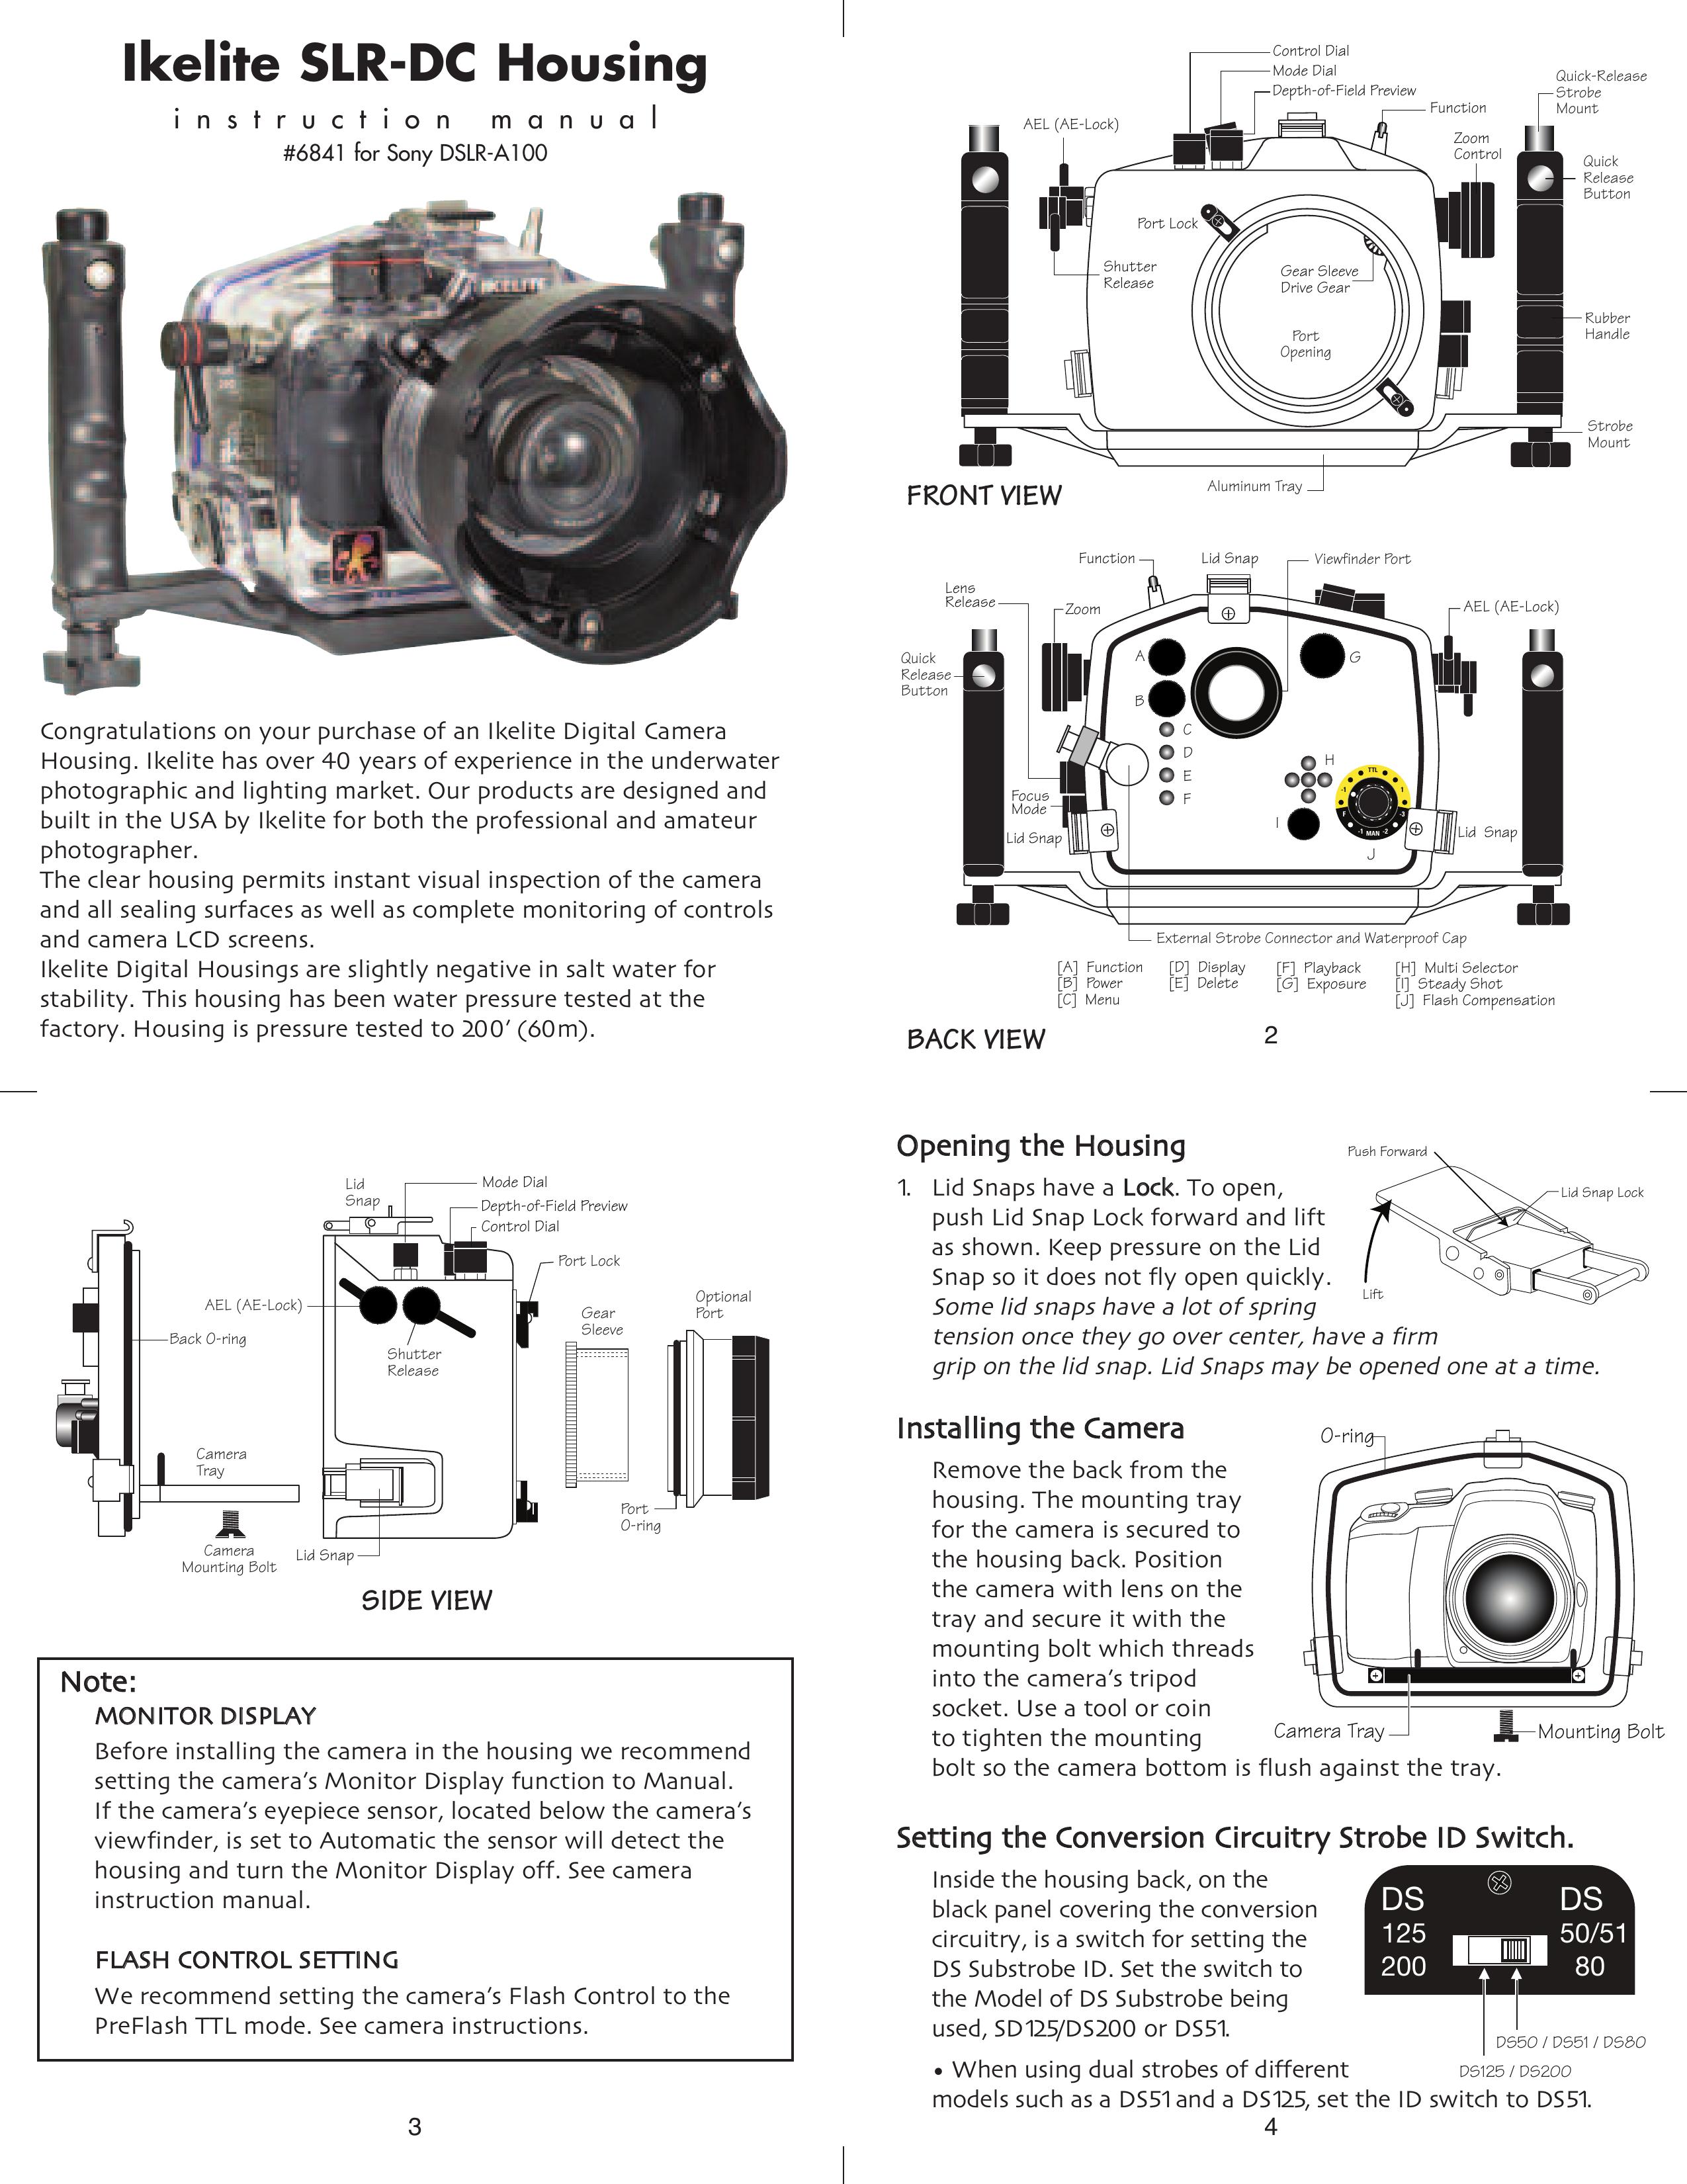 Ikelite DSLR-A100 Digital Camera User Manual